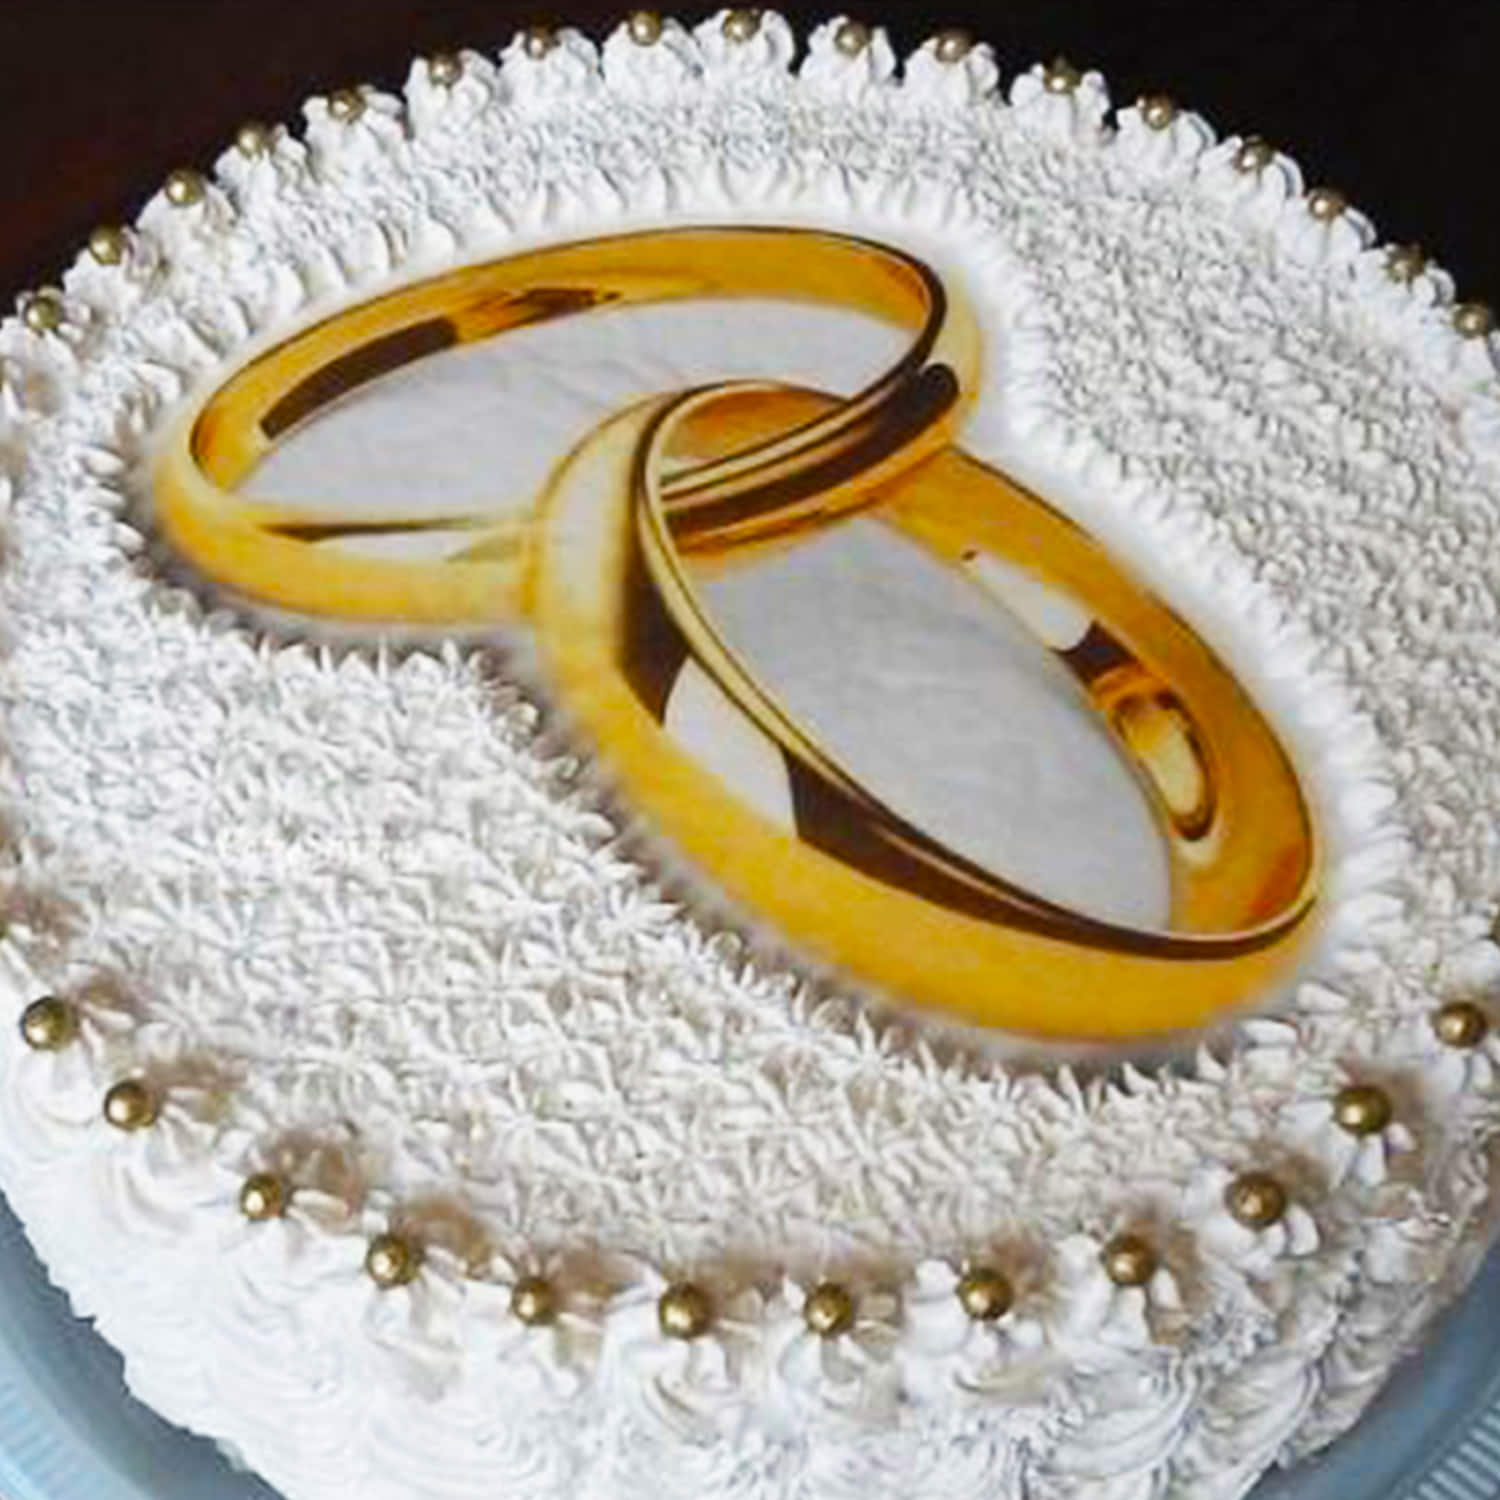 Ring Ceremony 5 inch Glitter Cake Topper – Bakeworld Retails Pvt Ltd